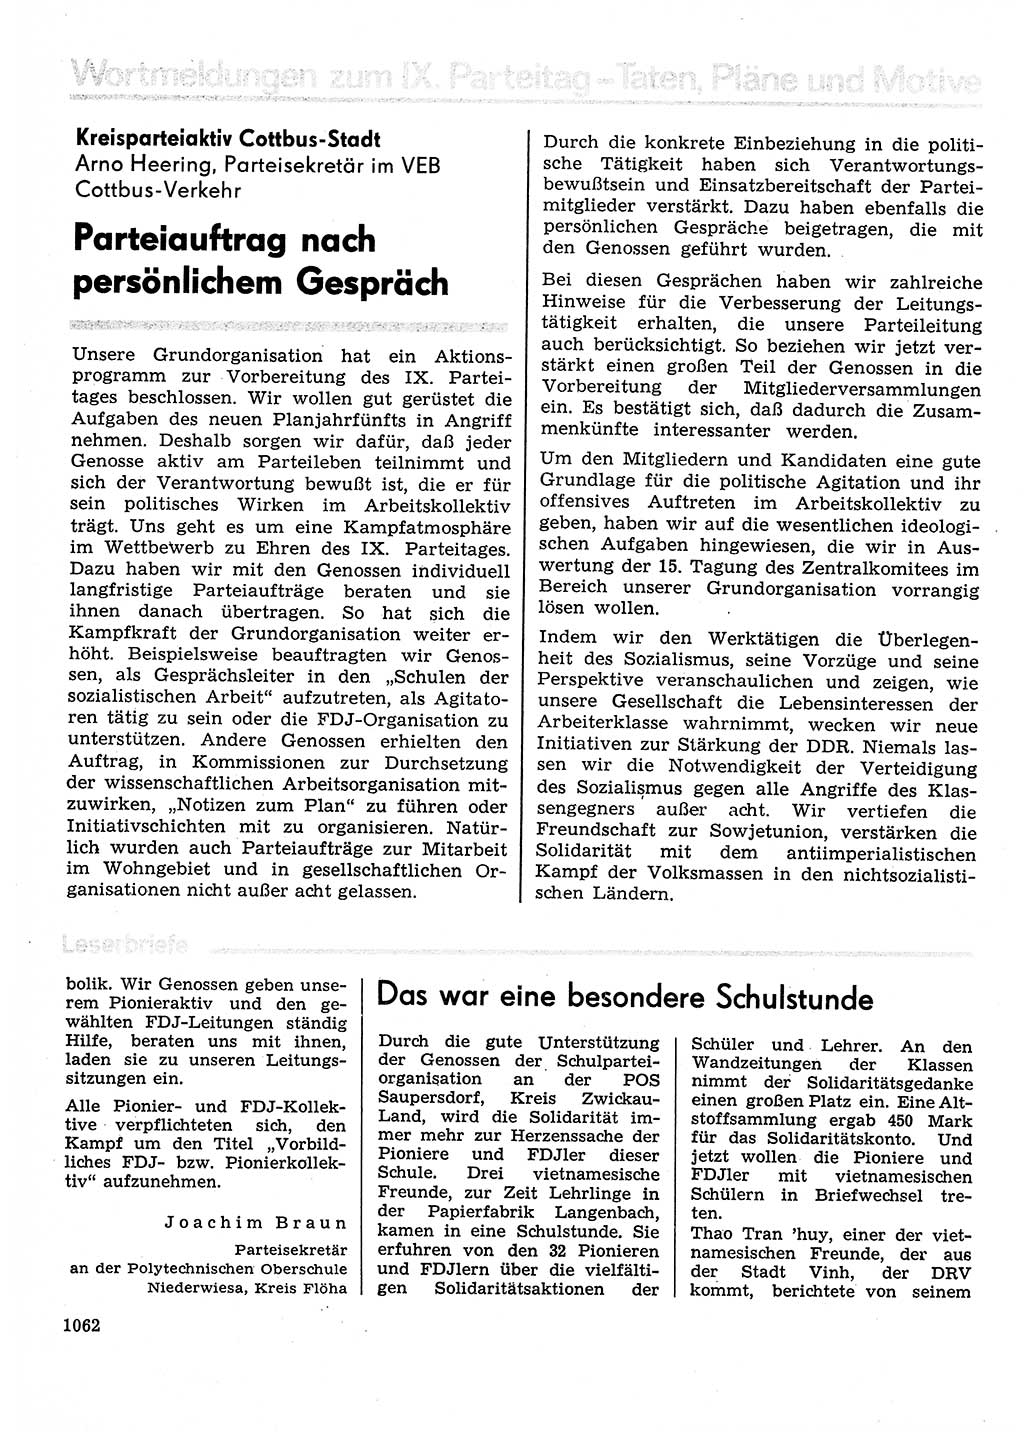 Neuer Weg (NW), Organ des Zentralkomitees (ZK) der SED (Sozialistische Einheitspartei Deutschlands) für Fragen des Parteilebens, 30. Jahrgang [Deutsche Demokratische Republik (DDR)] 1975, Seite 1062 (NW ZK SED DDR 1975, S. 1062)